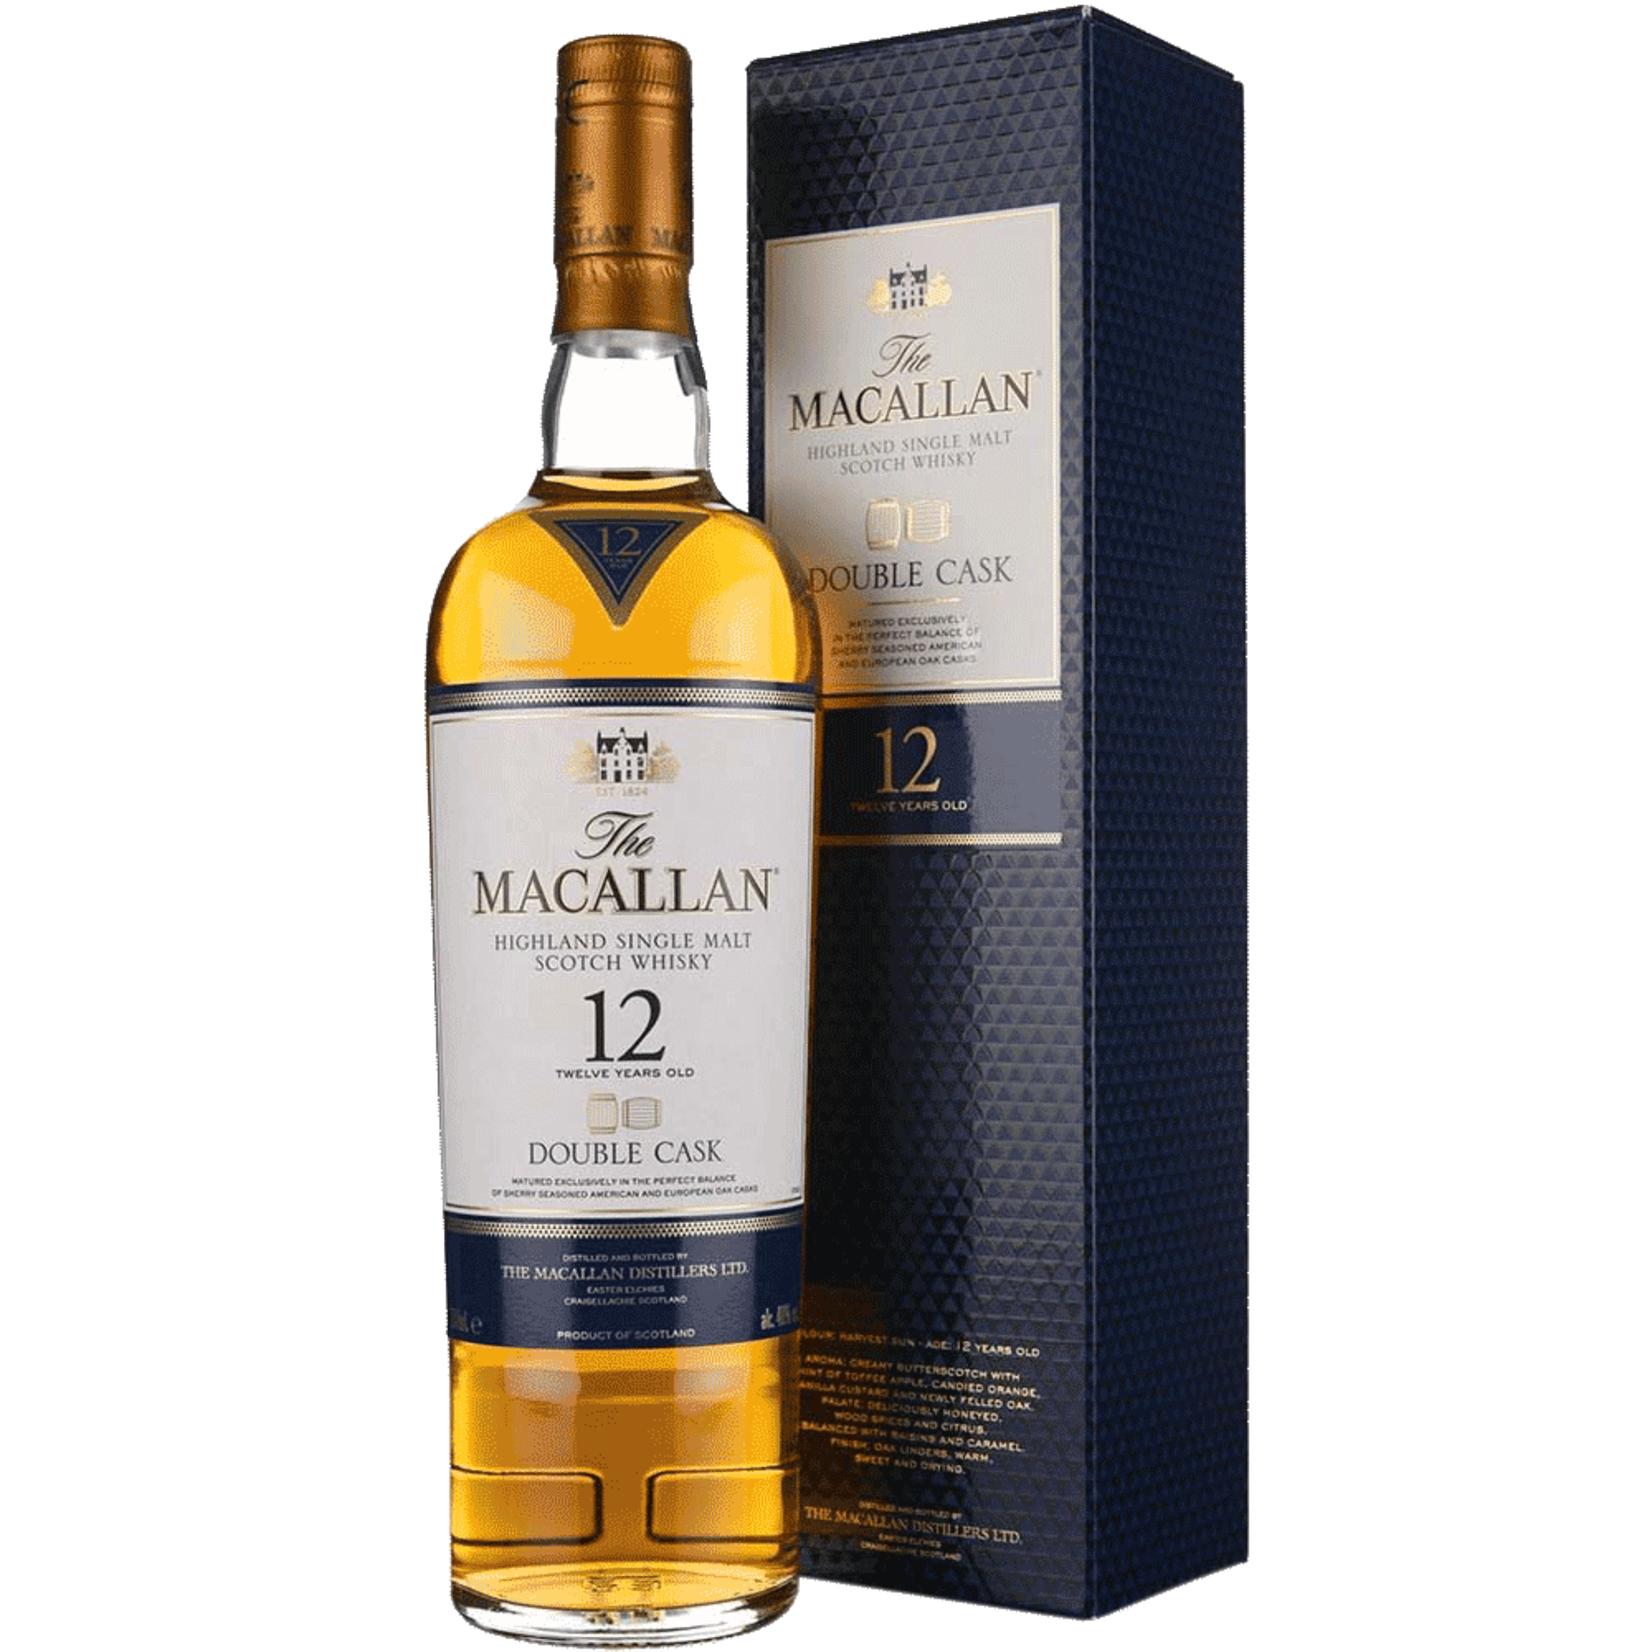 12 сингл молт. Macallan Double Cask 12 years old. Macallan 12 Highland Single Malt Scotch. Виски the Macallan Double Cask. Макаллан Шерри ОАК Каск 12 лет.